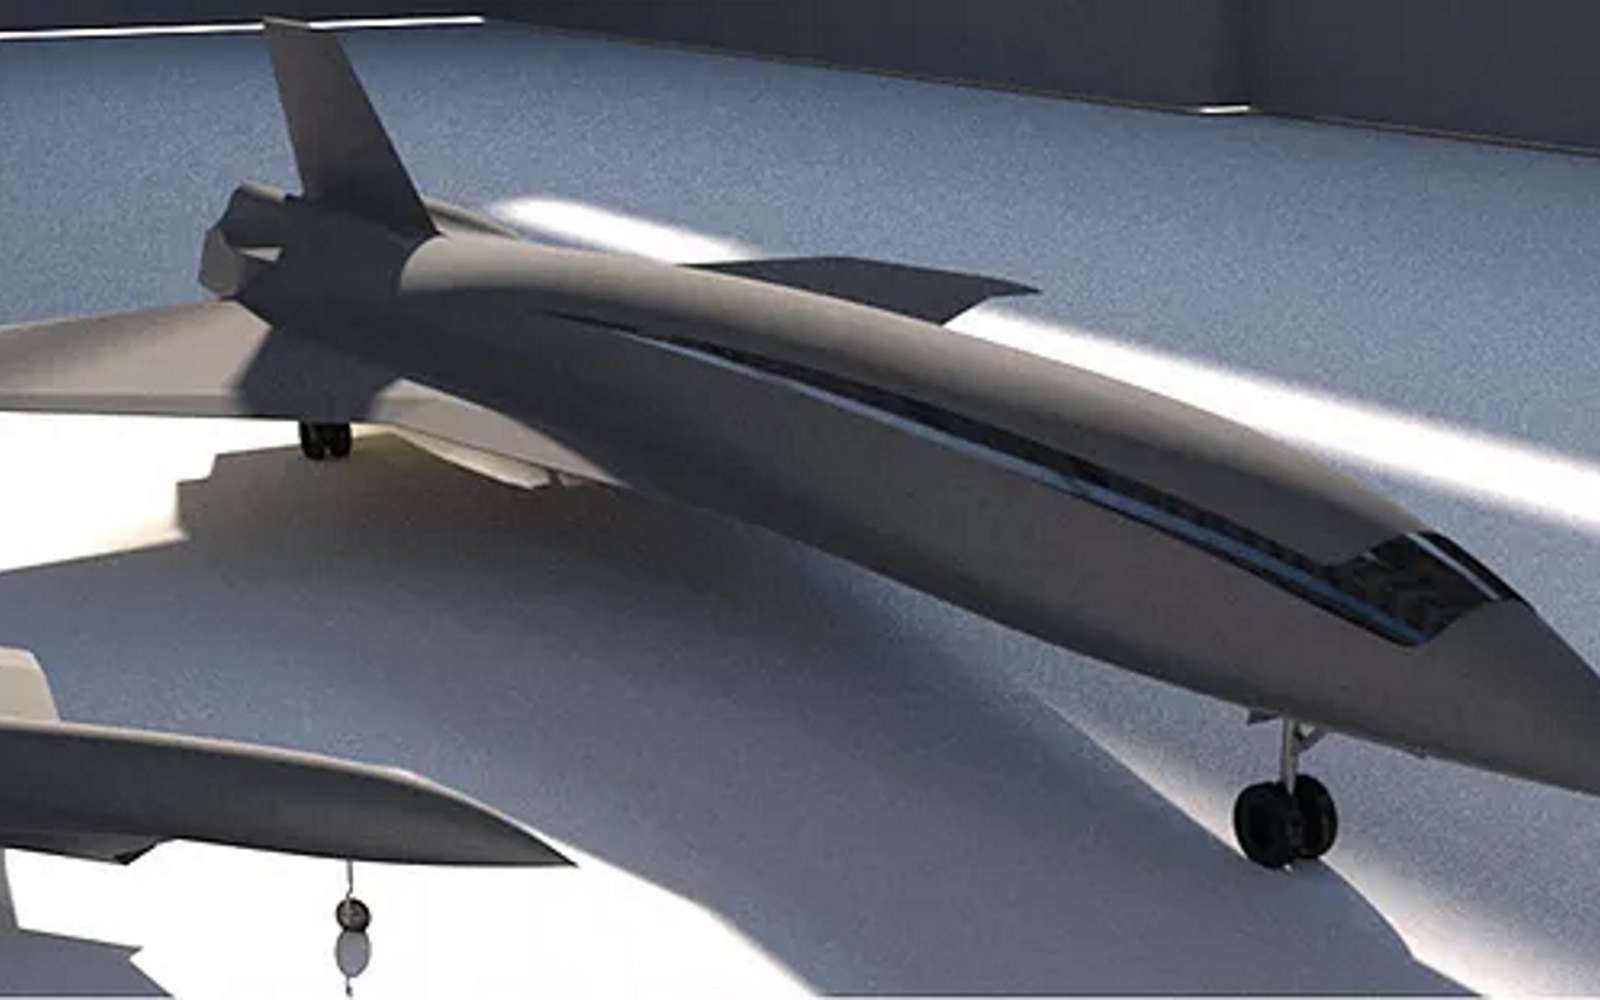 Pour le moment, l’avion hypersonique de Hermeus Corporation n’est qu’un concept. Son développement devrait prendre une dizaine d’années selon l’avionneur. © Hermeus